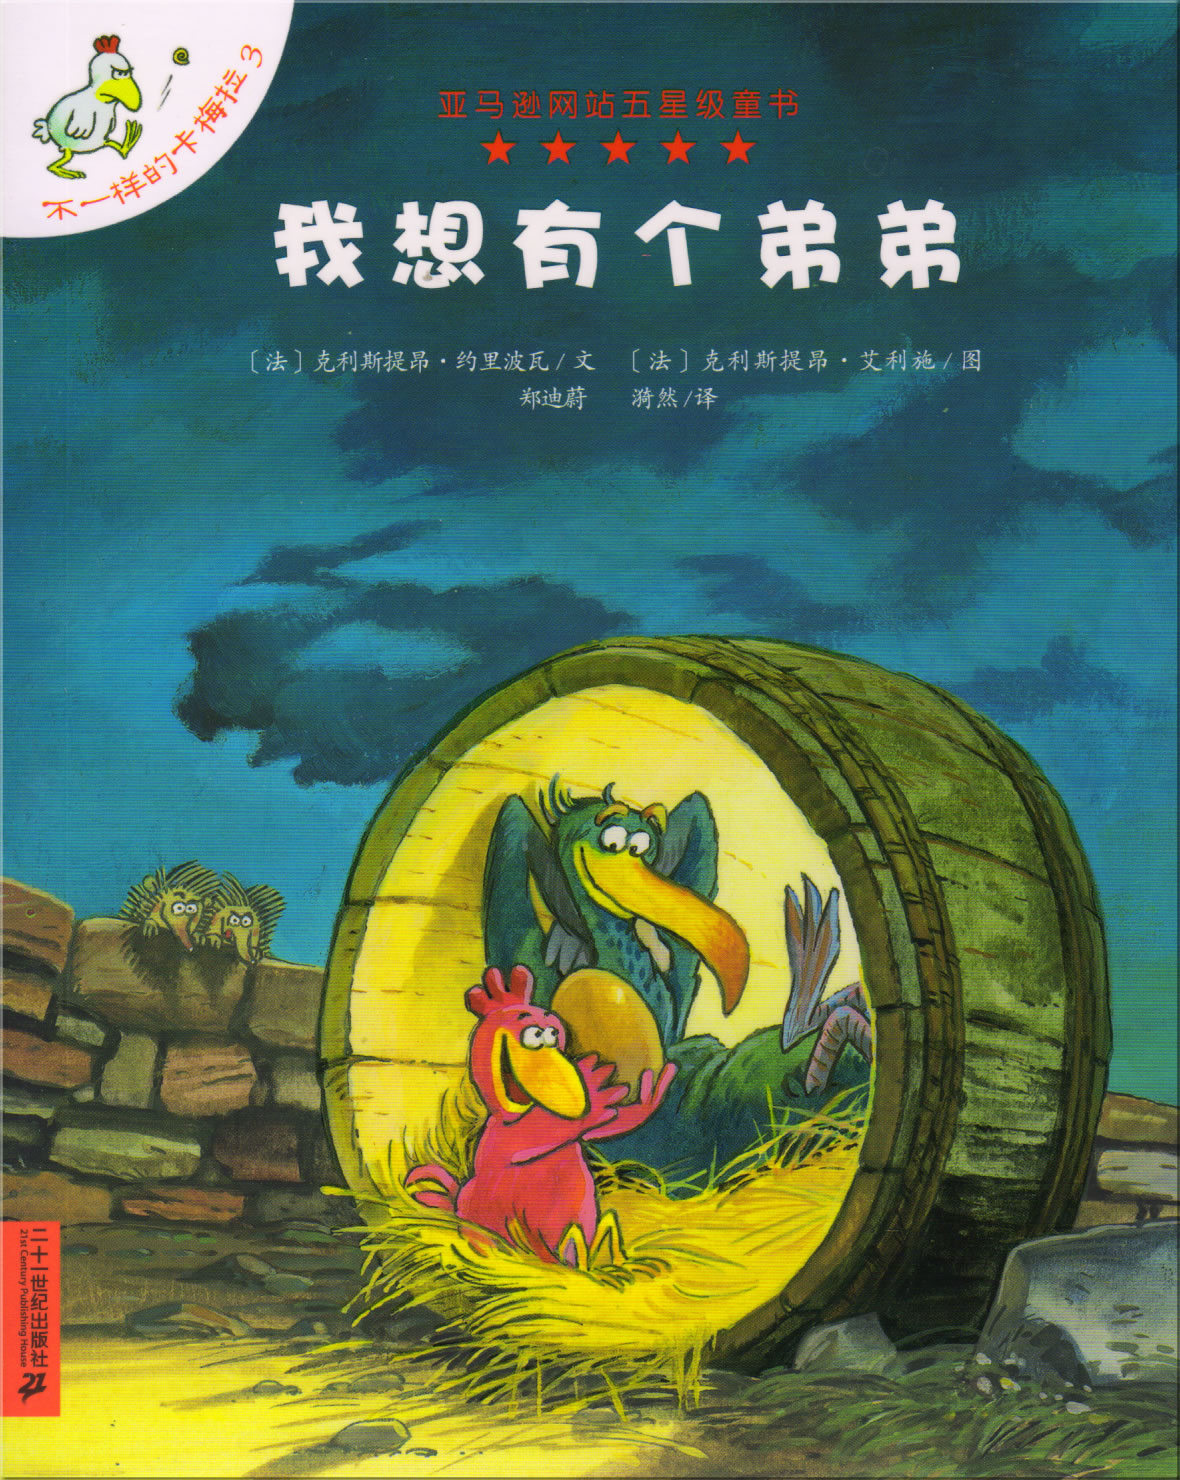 Les P'tites Poules: Le jour où mon frère viendra (édition chinoise/chinesische Ausgabe)<br>ISBN: 978-7-5391-3517-5, 9787539135175